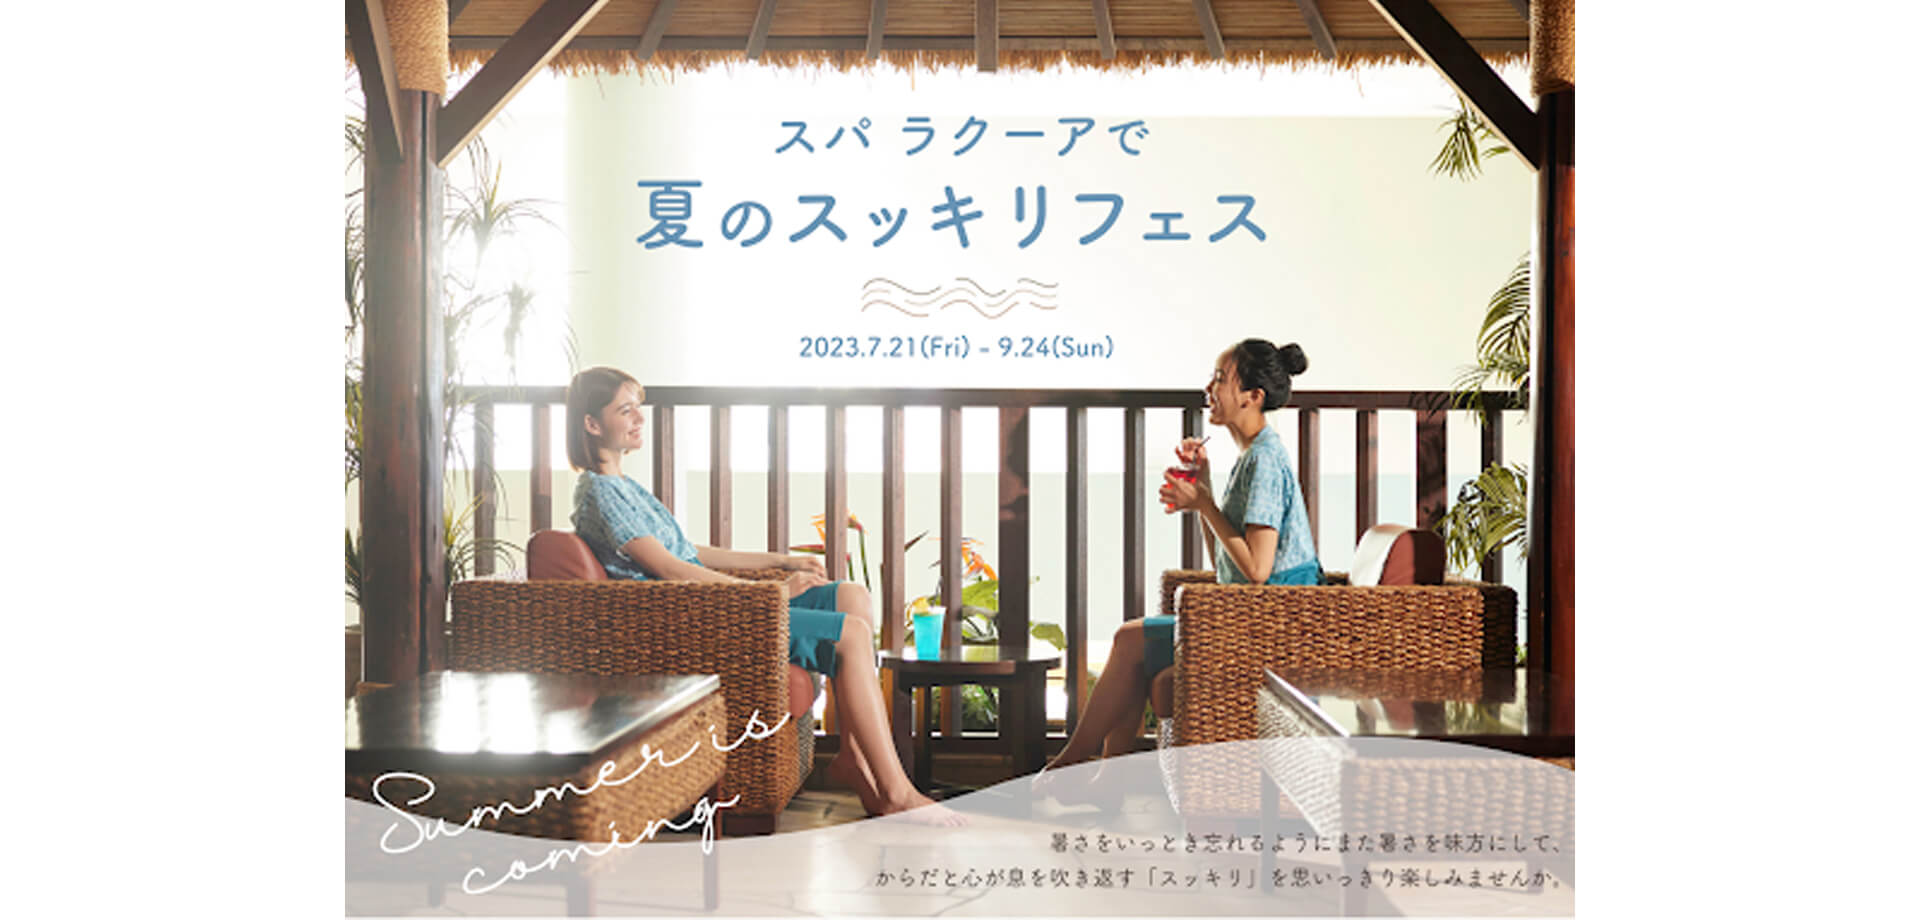 東京ドーム天然温泉 Spa LaQua『スパ ラクーアで夏のスッキリフェス』